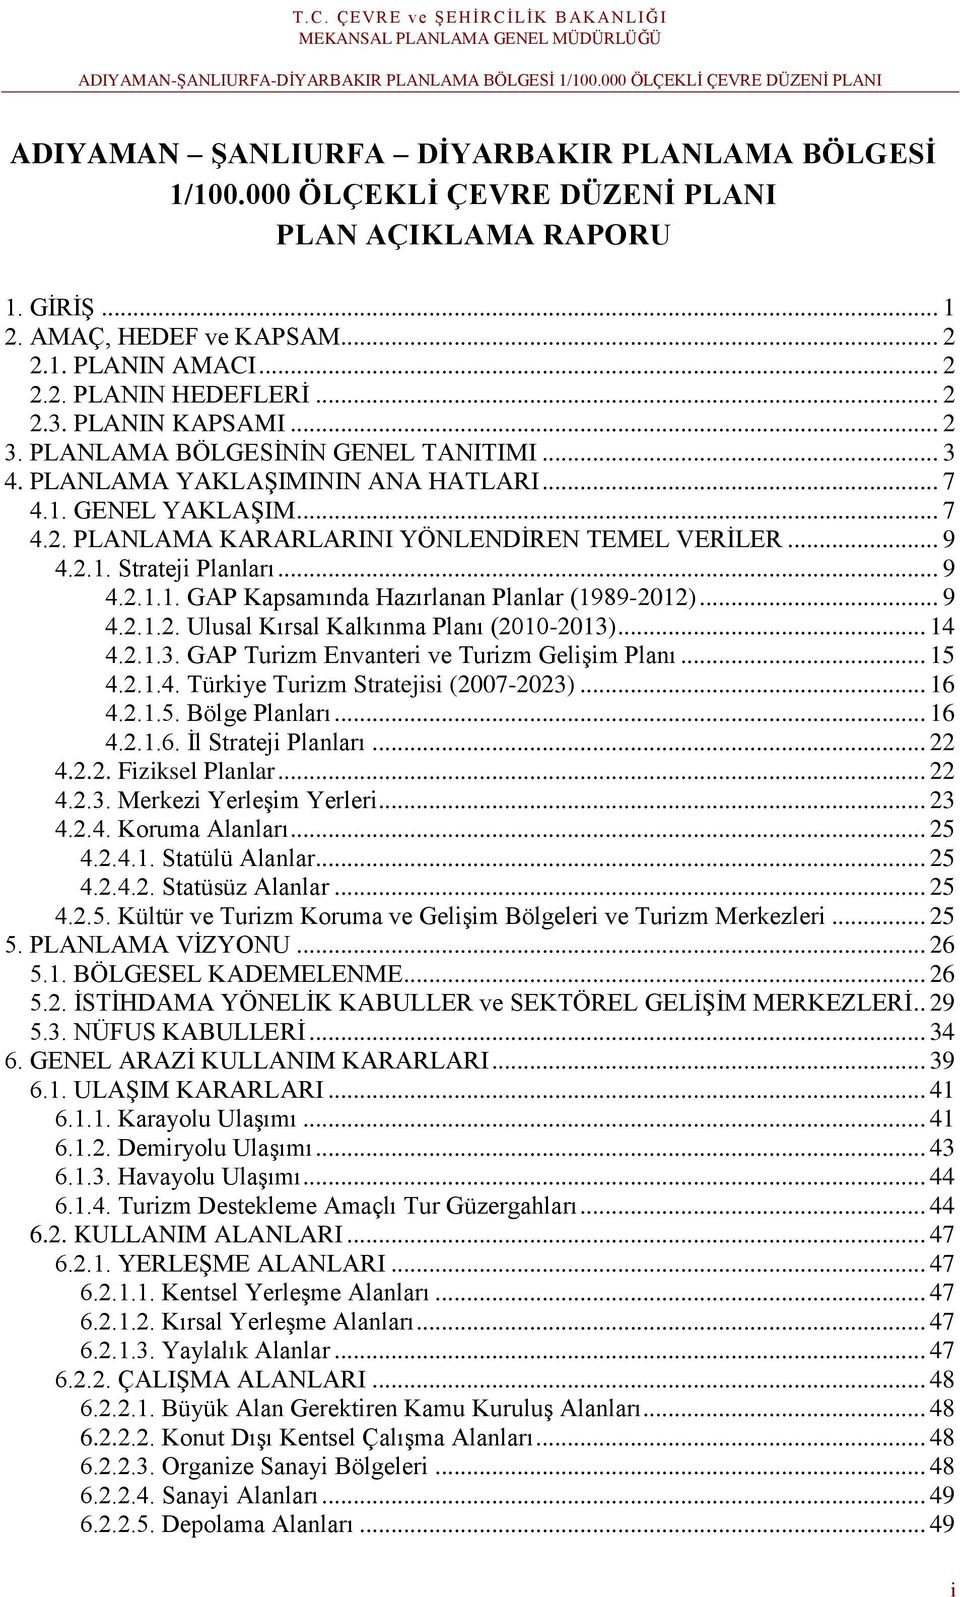 .. 9 4.2.1.1. GAP Kapsamında Hazırlanan Planlar (1989-2012)... 9 4.2.1.2. Ulusal Kırsal Kalkınma Planı (2010-2013)... 14 4.2.1.3. GAP Turizm Envanteri ve Turizm Gelişim Planı... 15 4.2.1.4. Türkiye Turizm Stratejisi (2007-2023).